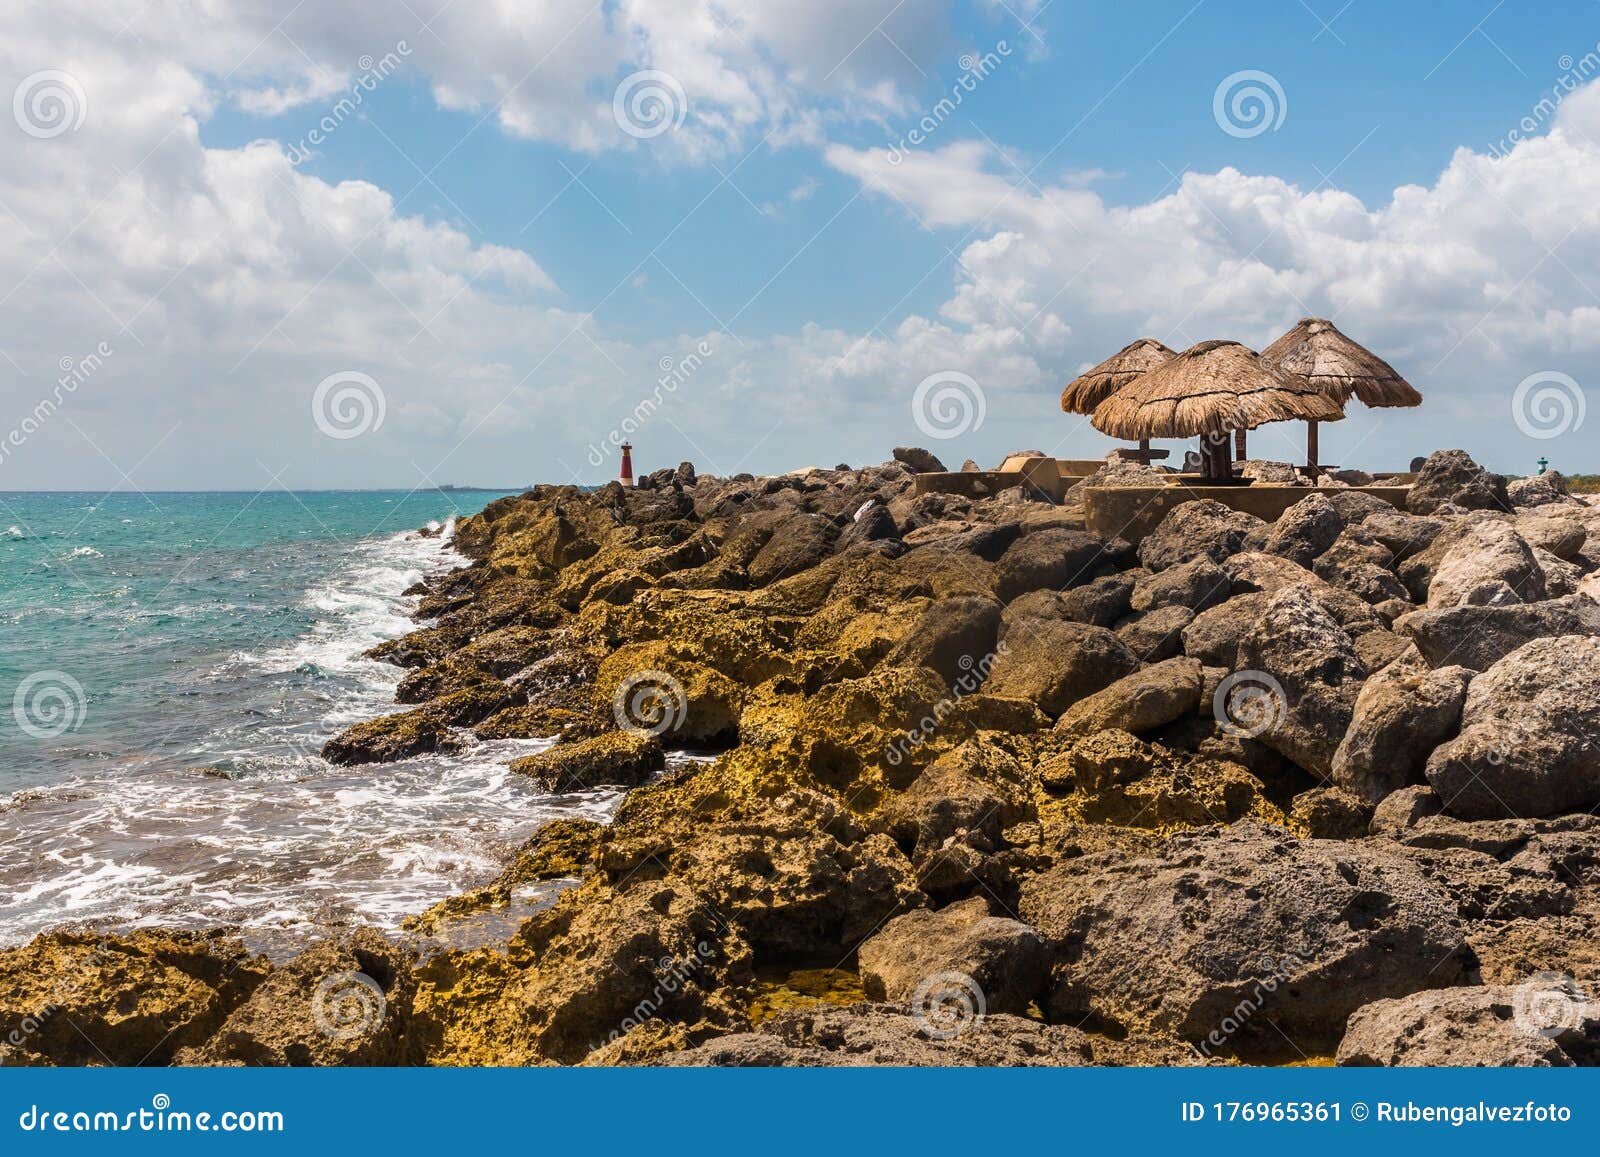 rocky coast caribbean sea